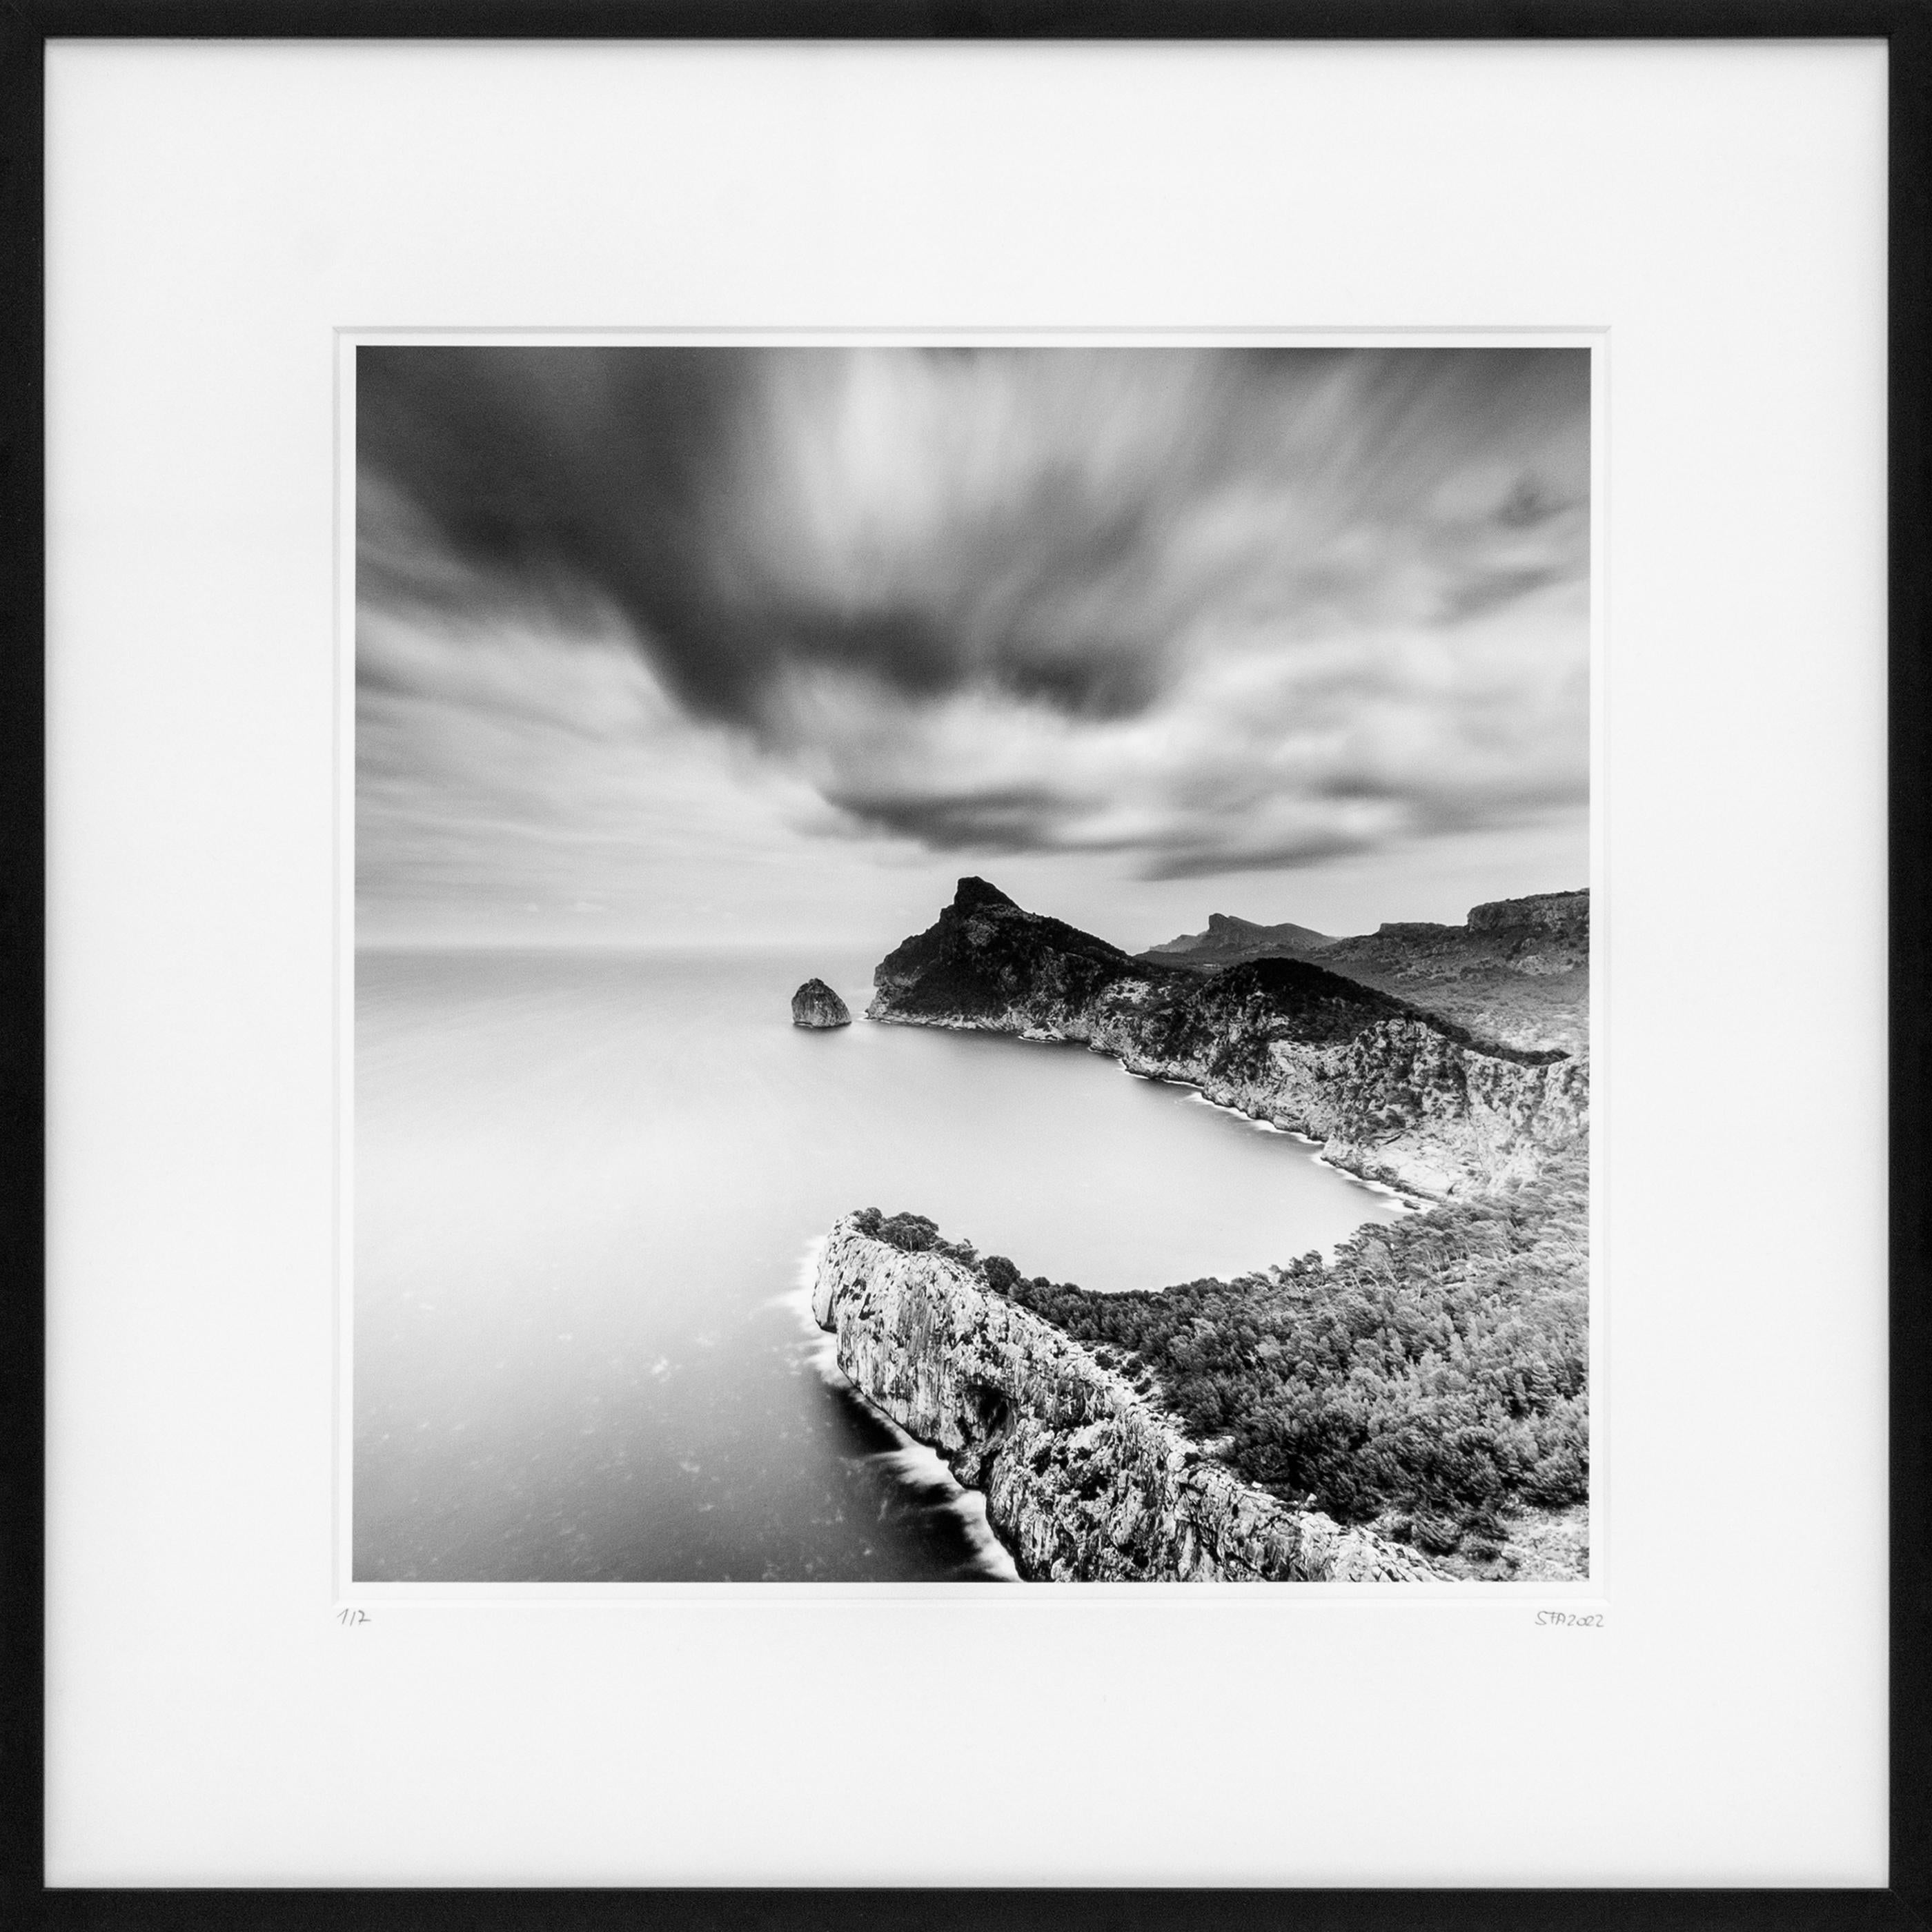 Black and White Photograph Gerald Berghammer - Mirador Es Colomer, Mallorca, Espagne, impression de paysage en noir et blanc, encadrée